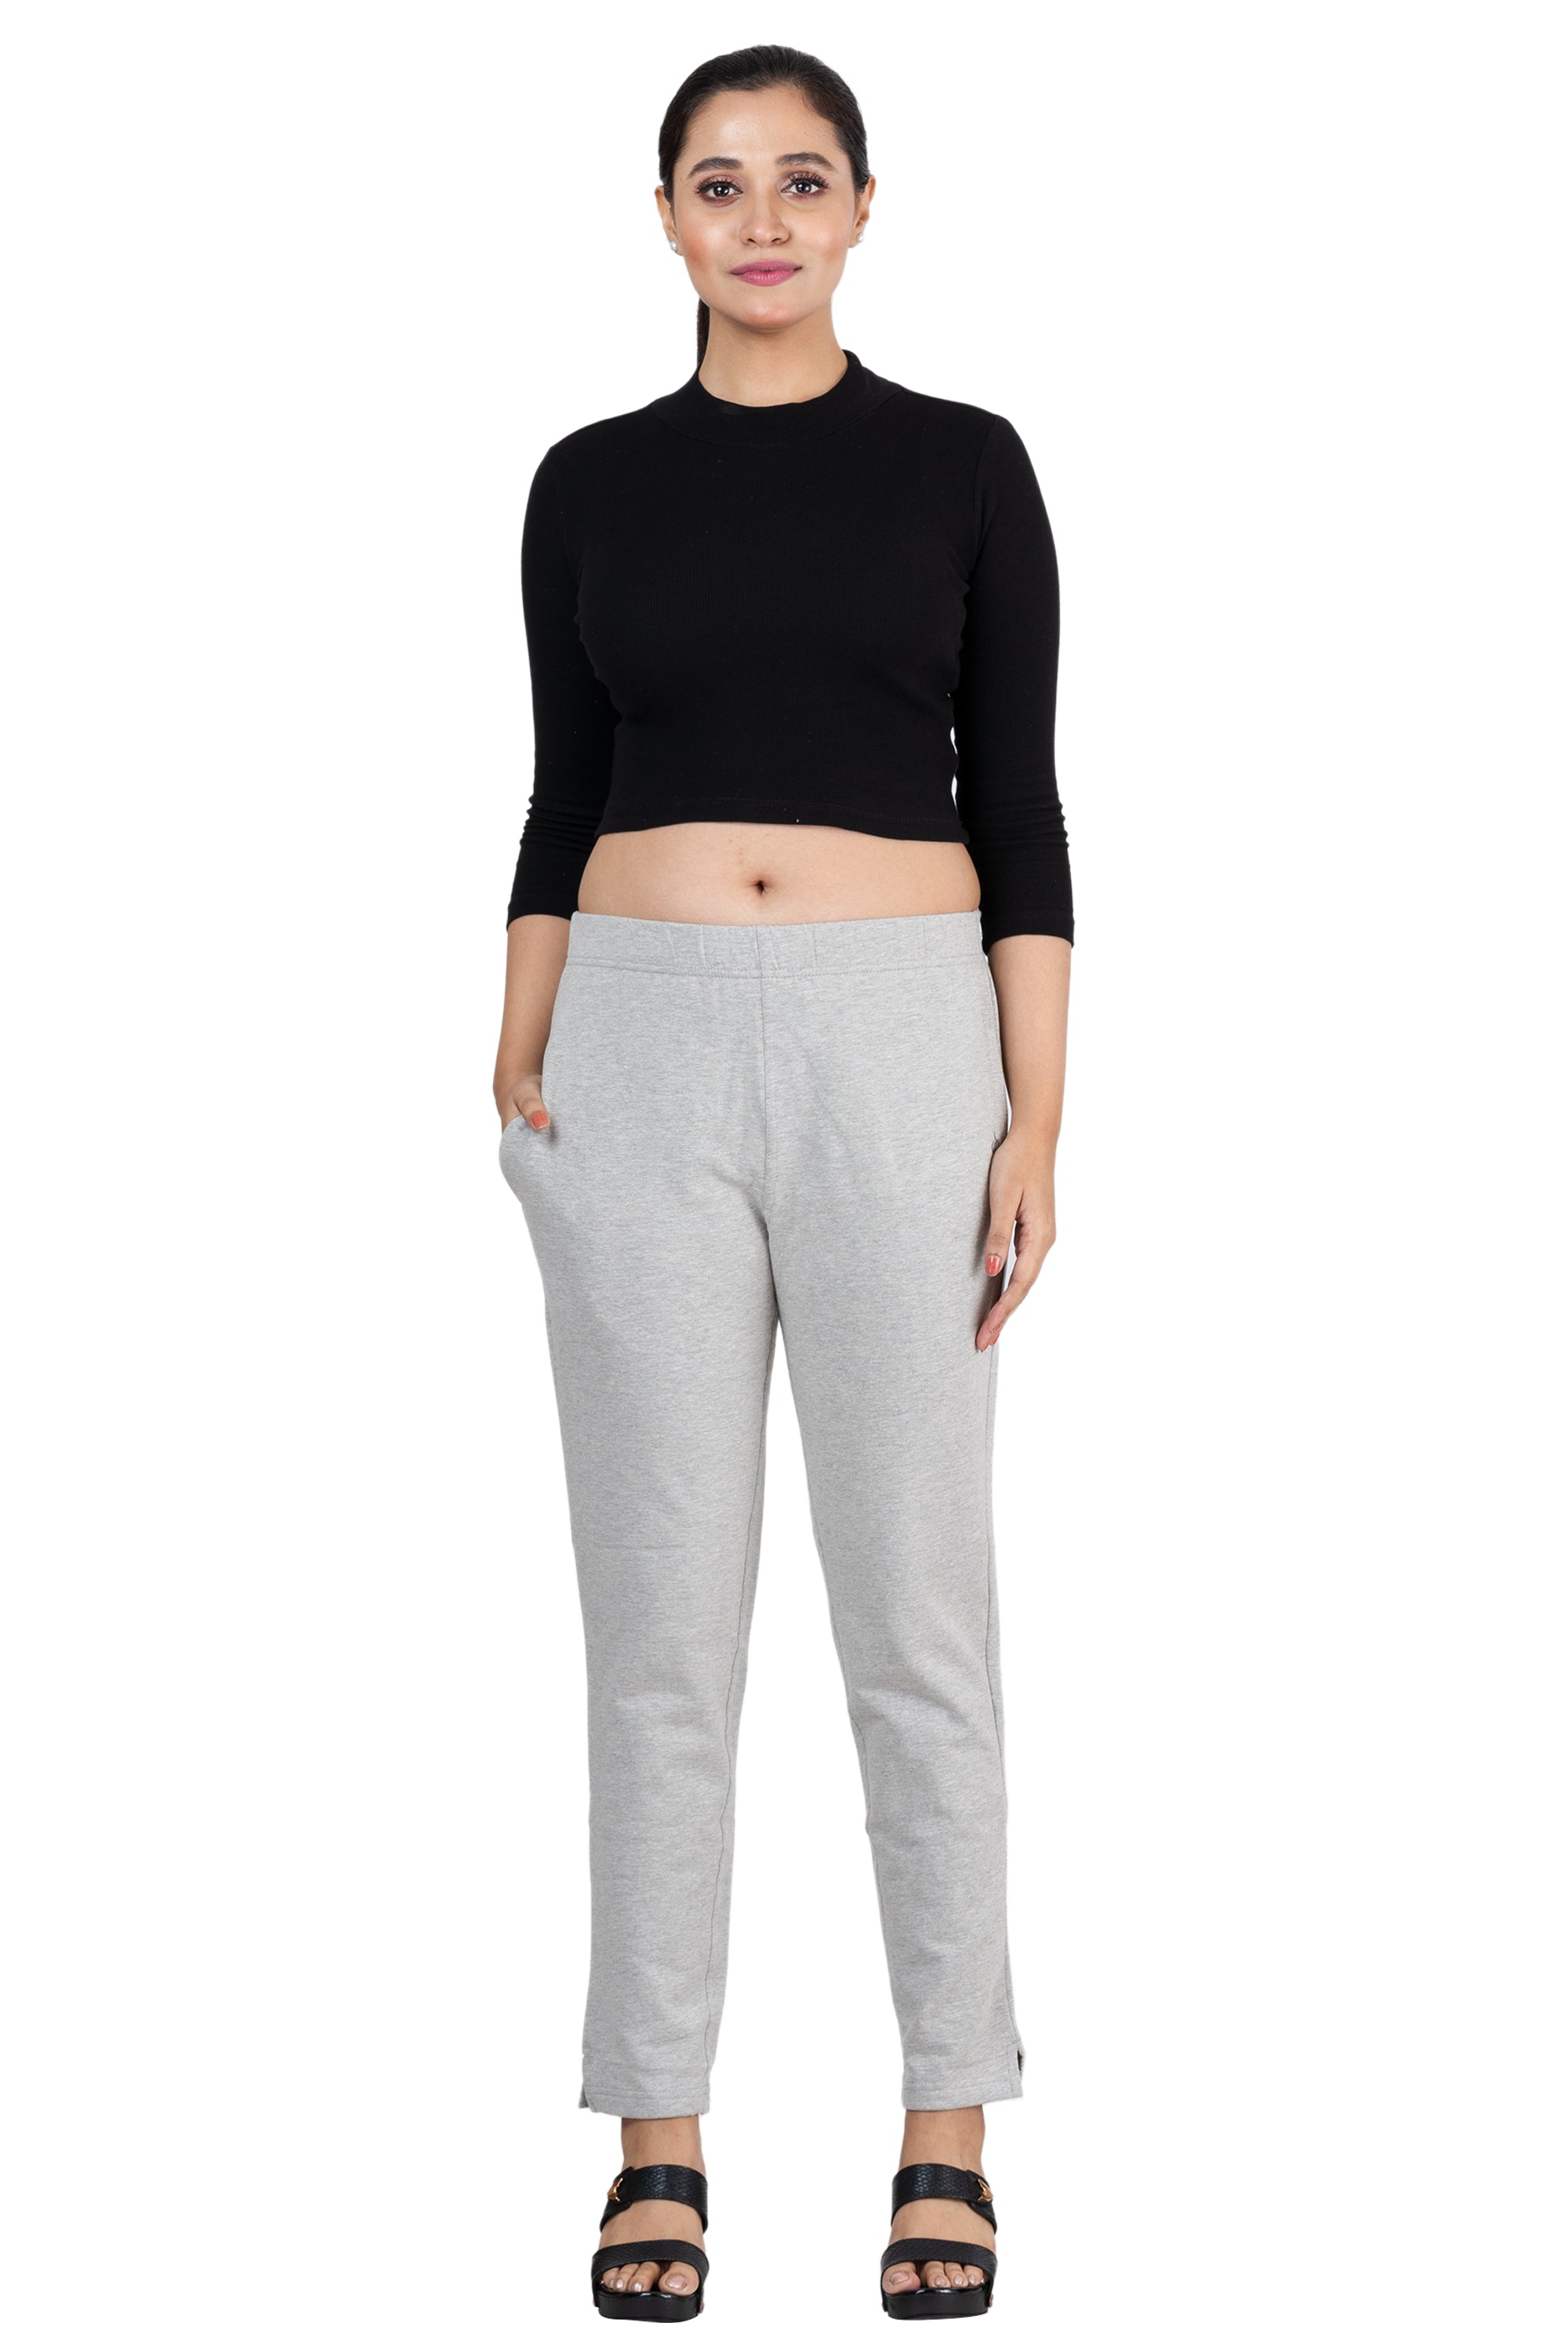 Buy Plazma Jeans Womens Regular Fit Wine Color Formal Trouser Online  Get  47 Off